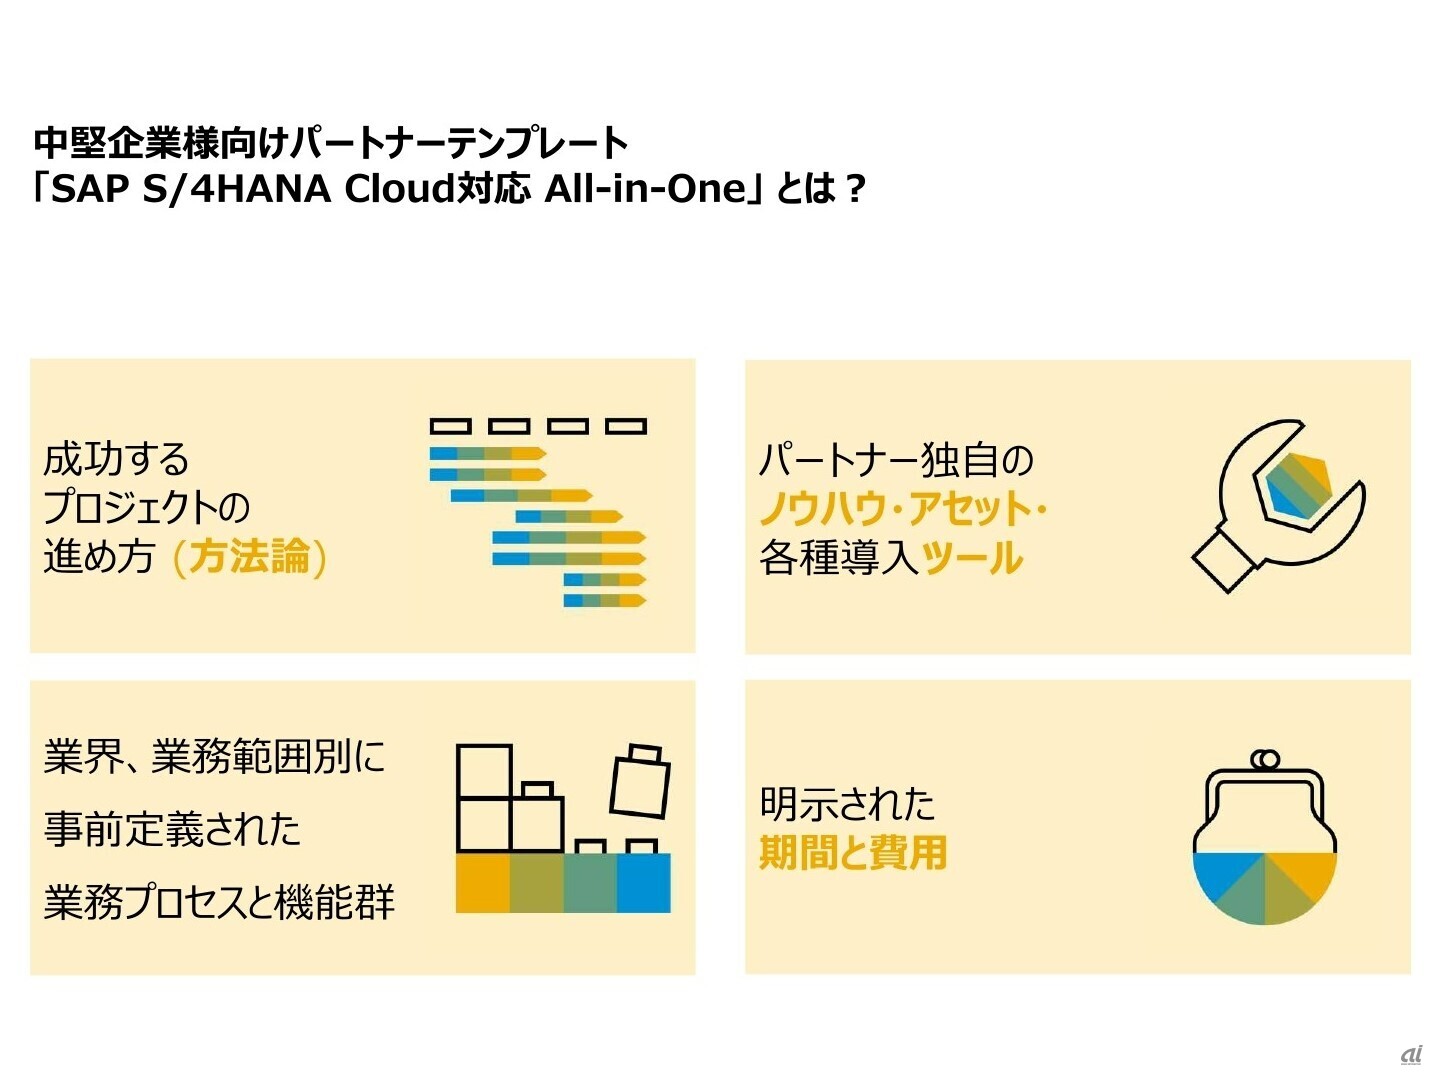 中堅中小企業向けパートナーテンプレートSAP S/4HANA Cloud 対応 All in Oneの特徴